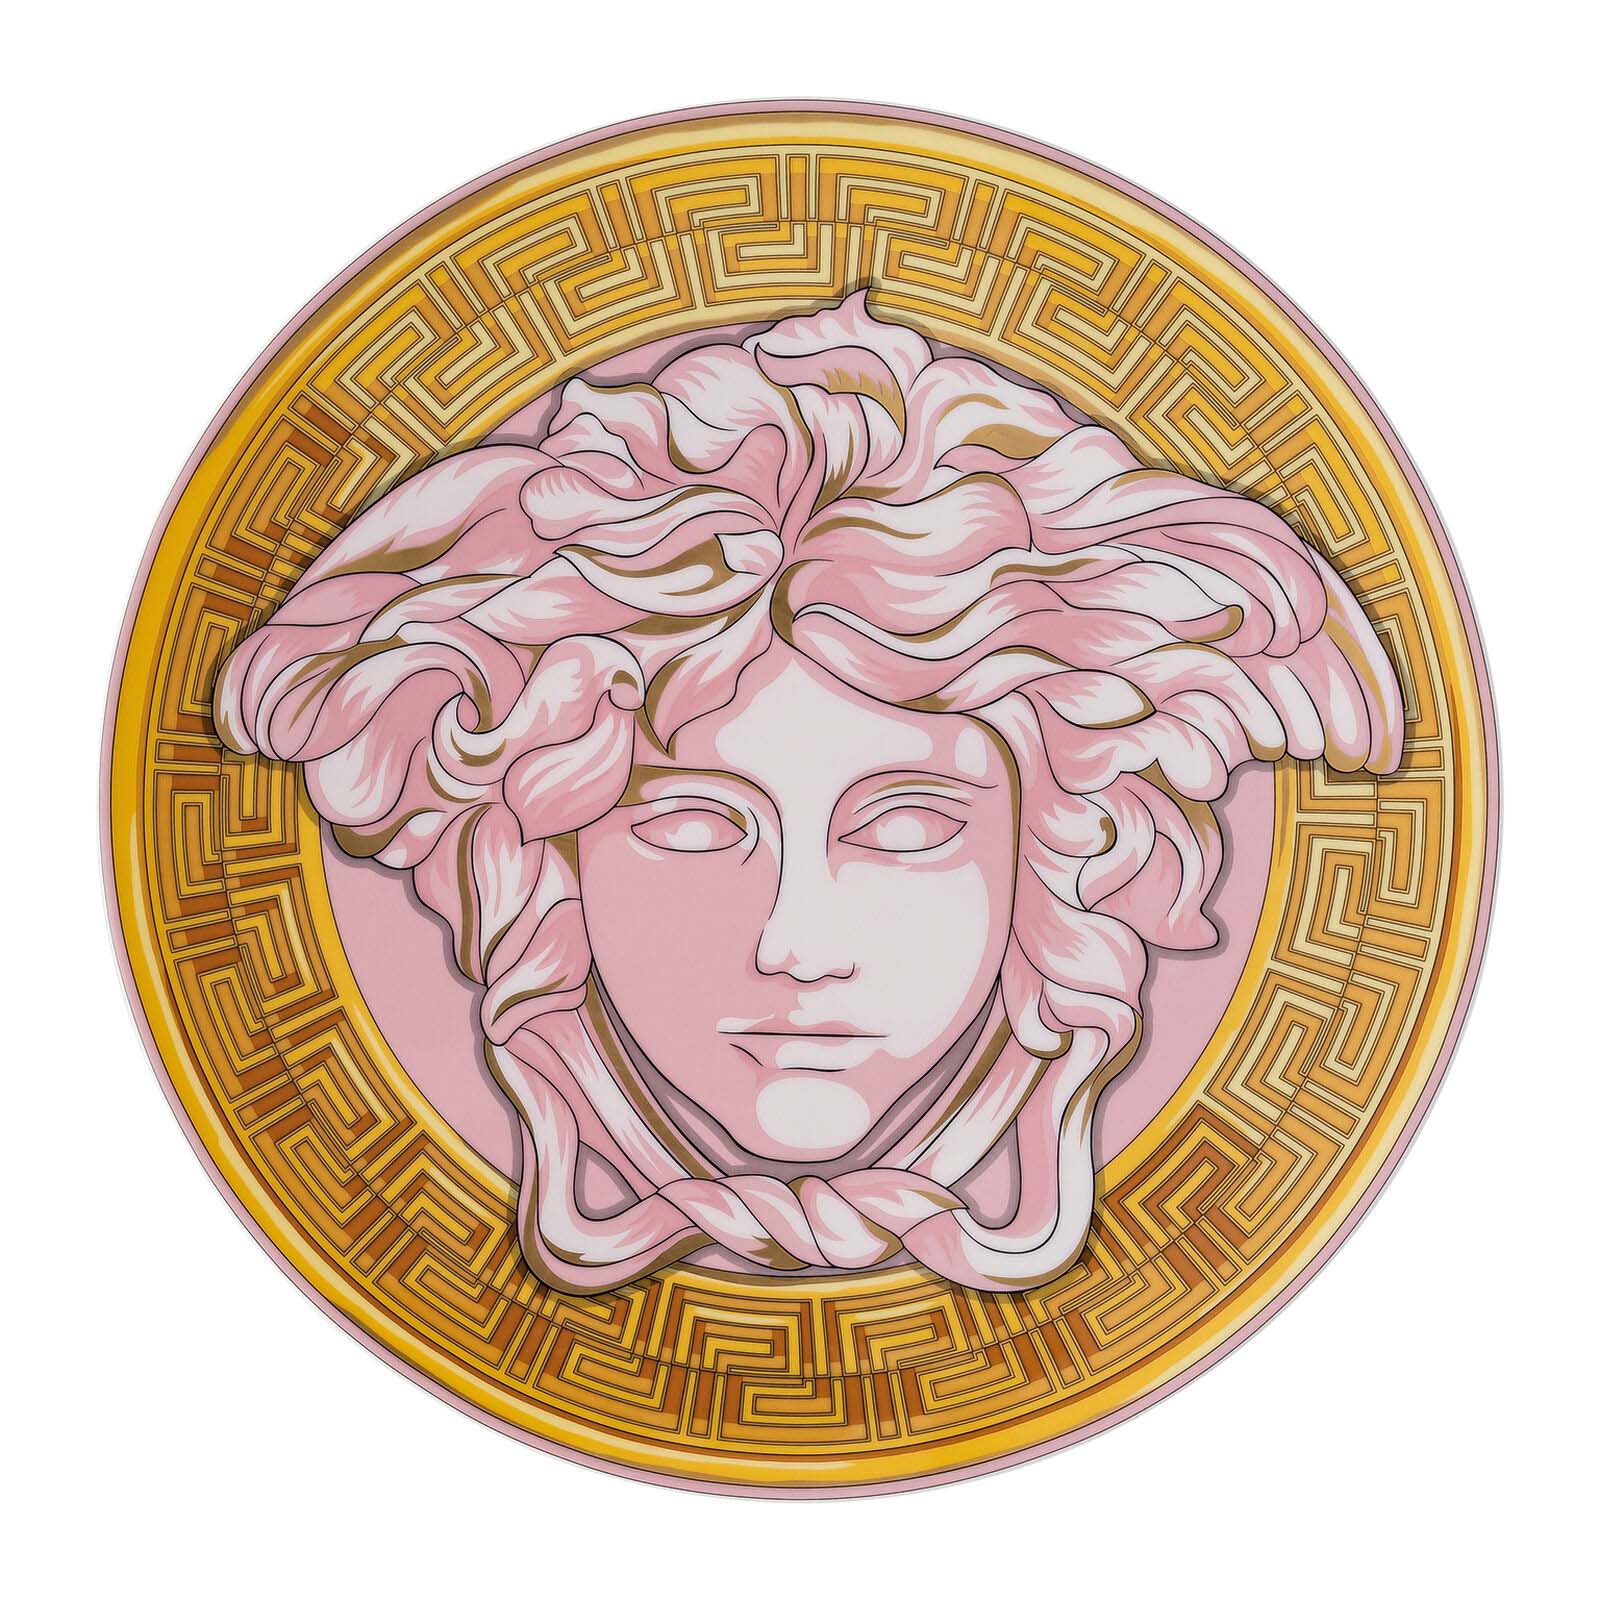  MEDUSA AMPLIFIED粉红色硬币盘的图片
